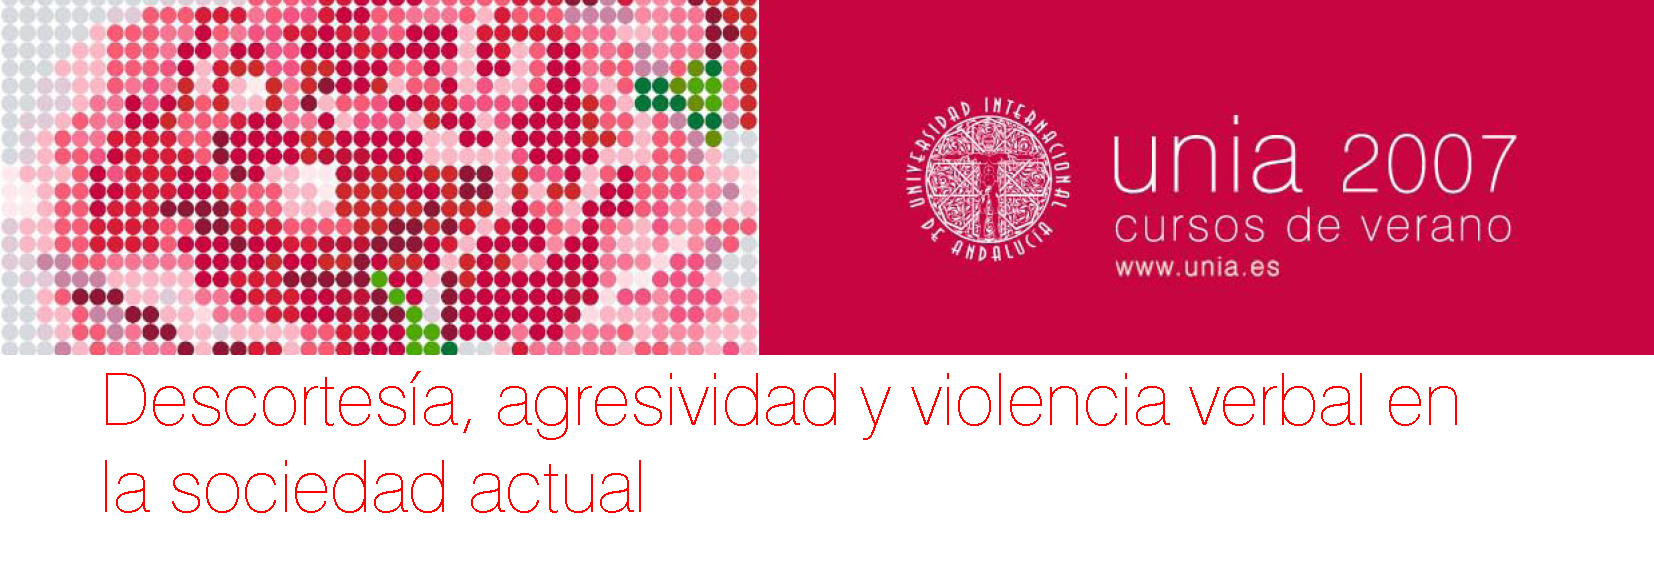 <p>Curso de verano en la Universidad Internacional de Andalucía sobre <em>Descortesía, agresividad y violencia verbal en la sociedad actual</em></p>
